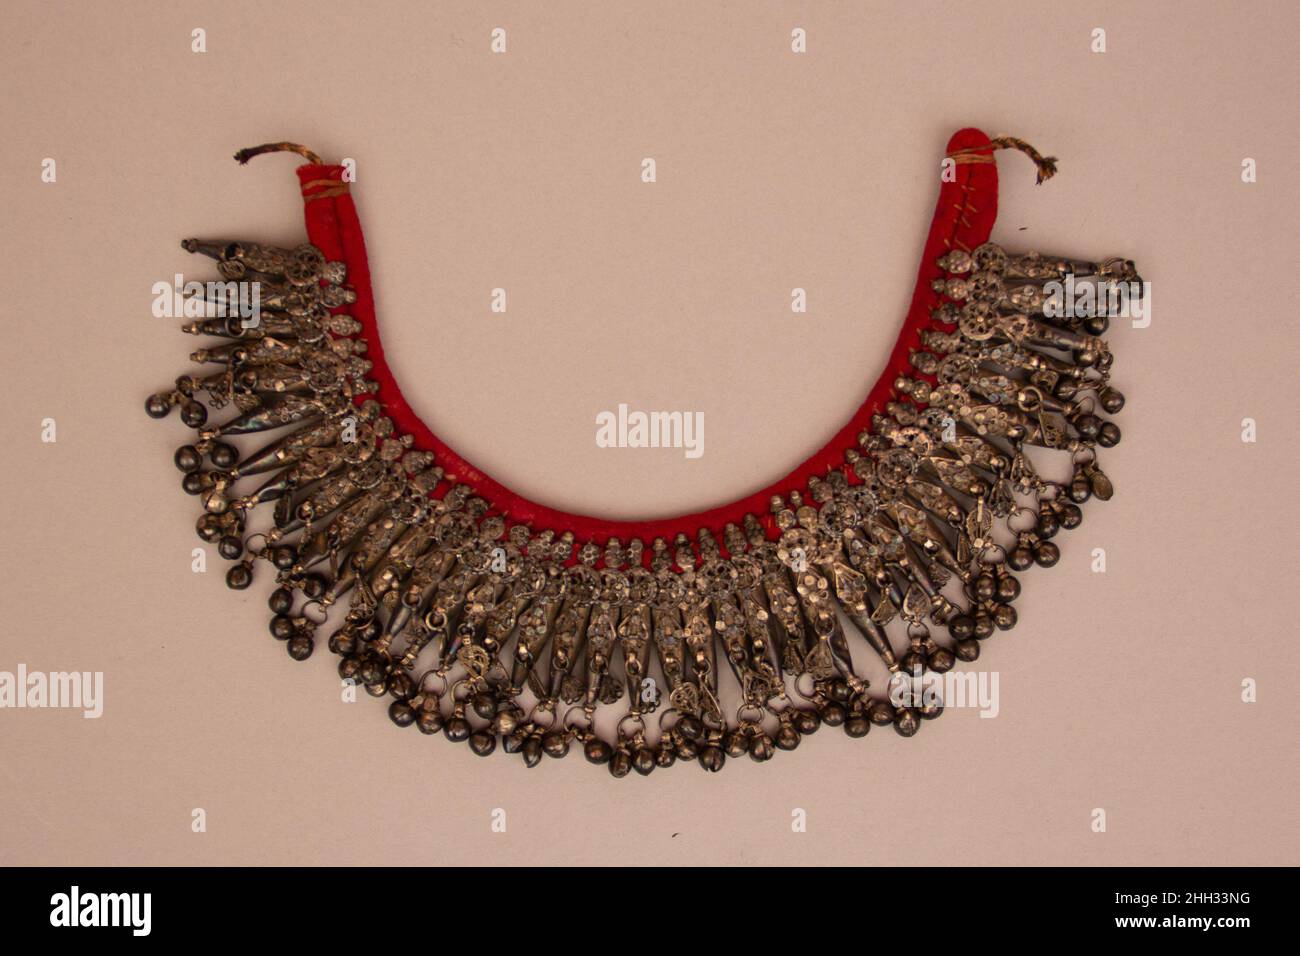 Halskette 19th Jahrhundert Halsketten mit mehreren Anhängern, die in Glocken enden, sind bei beduinischem Frauenschmuck aus der zentralen Region Saudi-Arabiens recht häufig. Die auditive Wirkung dieser dutzenden Glocken, die sich im Gleichklang bewegen, erzeugt einen großartigen Klang, während sich der Träger bewegt. Halsketten wie diese waren Wunder für die Ohren und die Augen. Silber war das bevorzugte Material für Beduinenjuwelen, und dieses Beispiel zeigt auch die Vorliebe für Rückenjuwelen auf einem roten Stoff, auf dem die Anhänger vernäht sind. Halskette. 19th Jahrhundert. Silber und Stoff. Saudi-Arabien zugeschrieben. Stockfoto